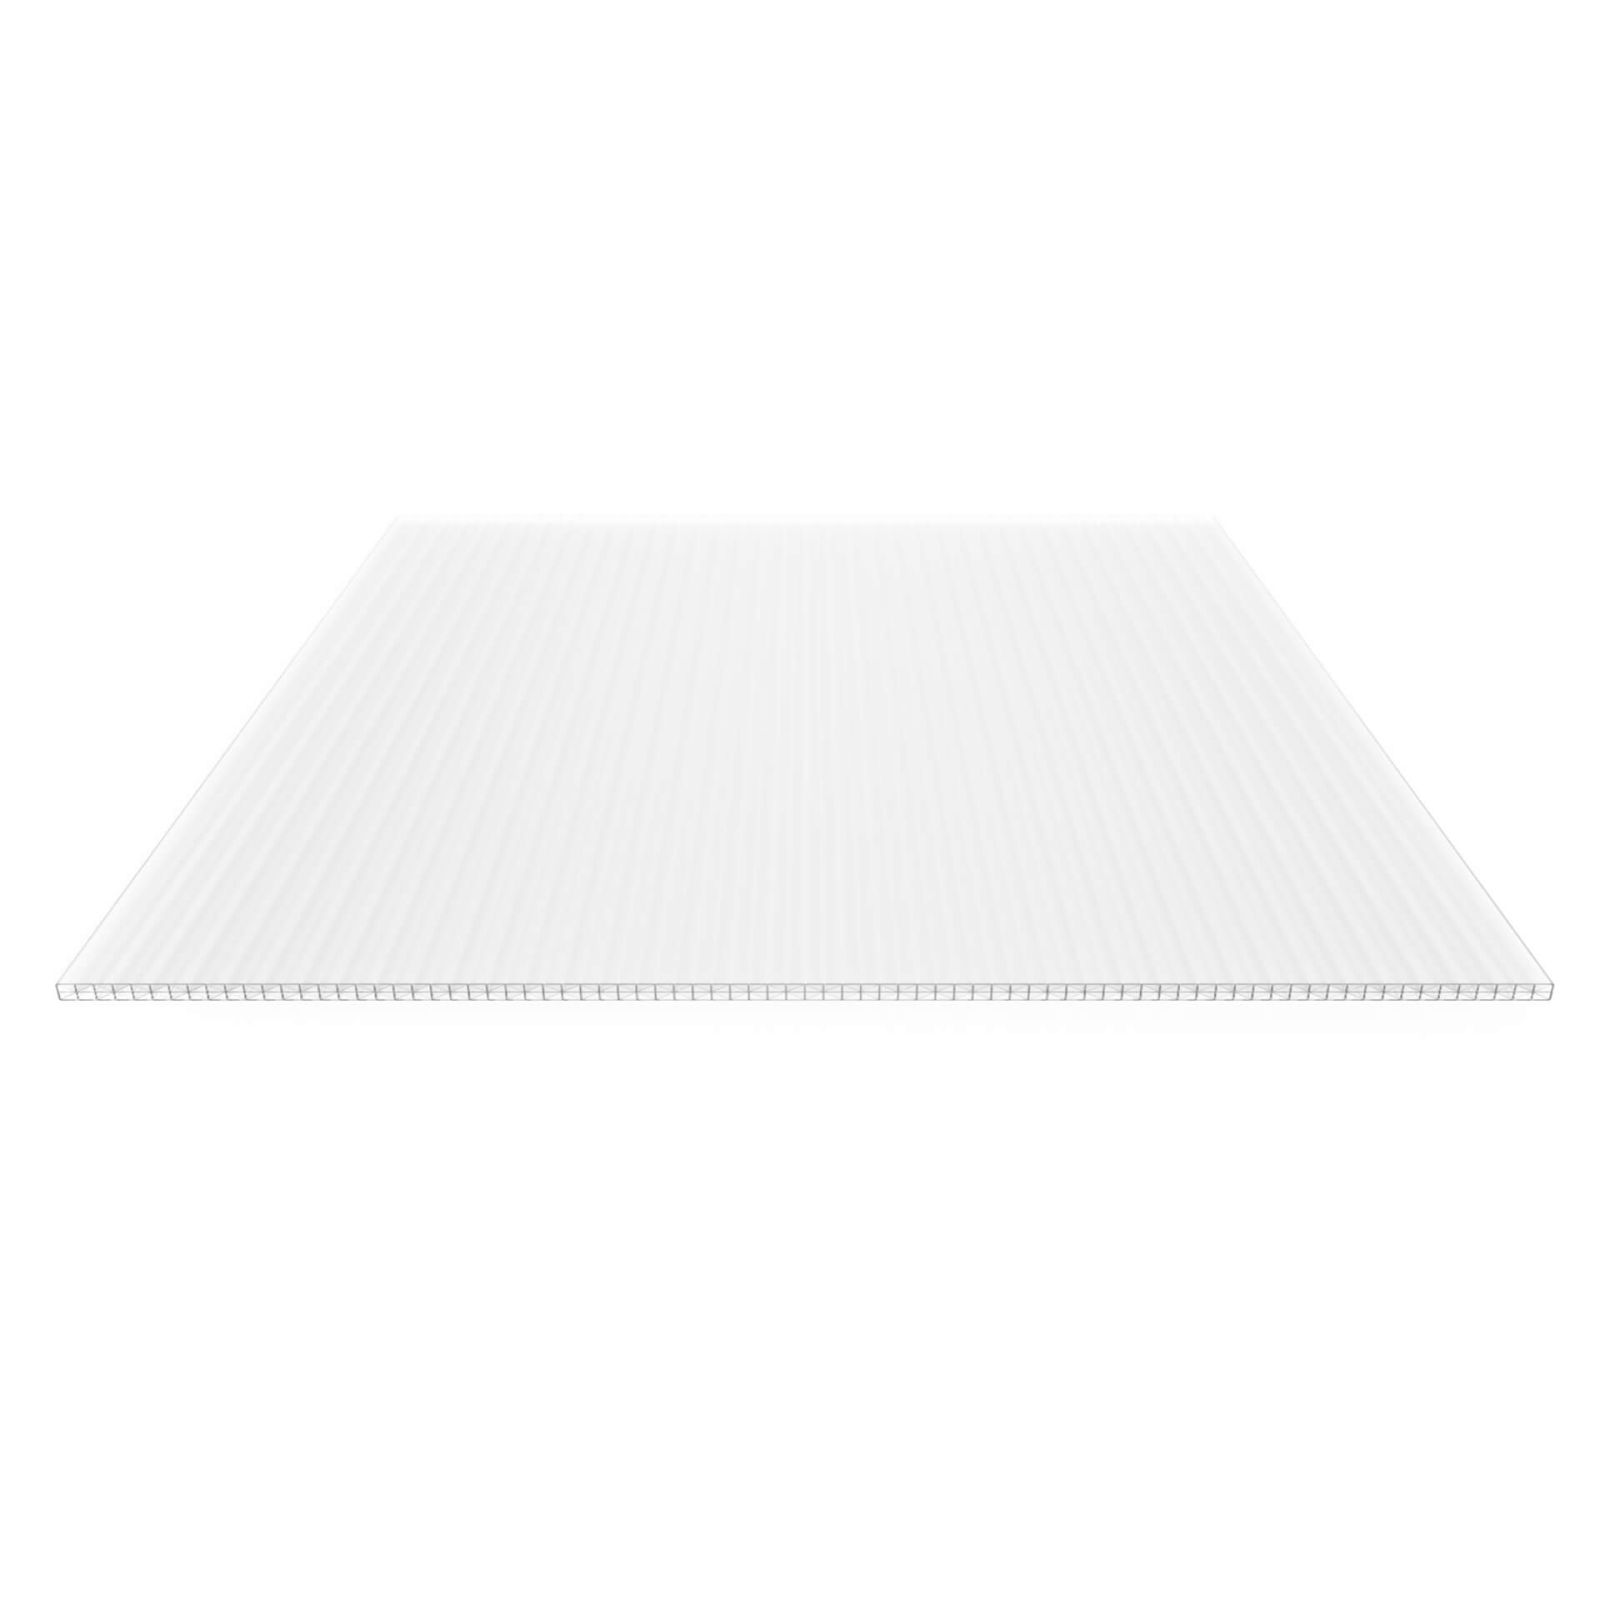 Polycarbonat Stegplatte | 16 mm | Profil Mendiger | Sparpaket | Plattenbreite 980 mm | Opal Weiß | Extra stark | Breite 3,09 m | Länge 2,00 m #5